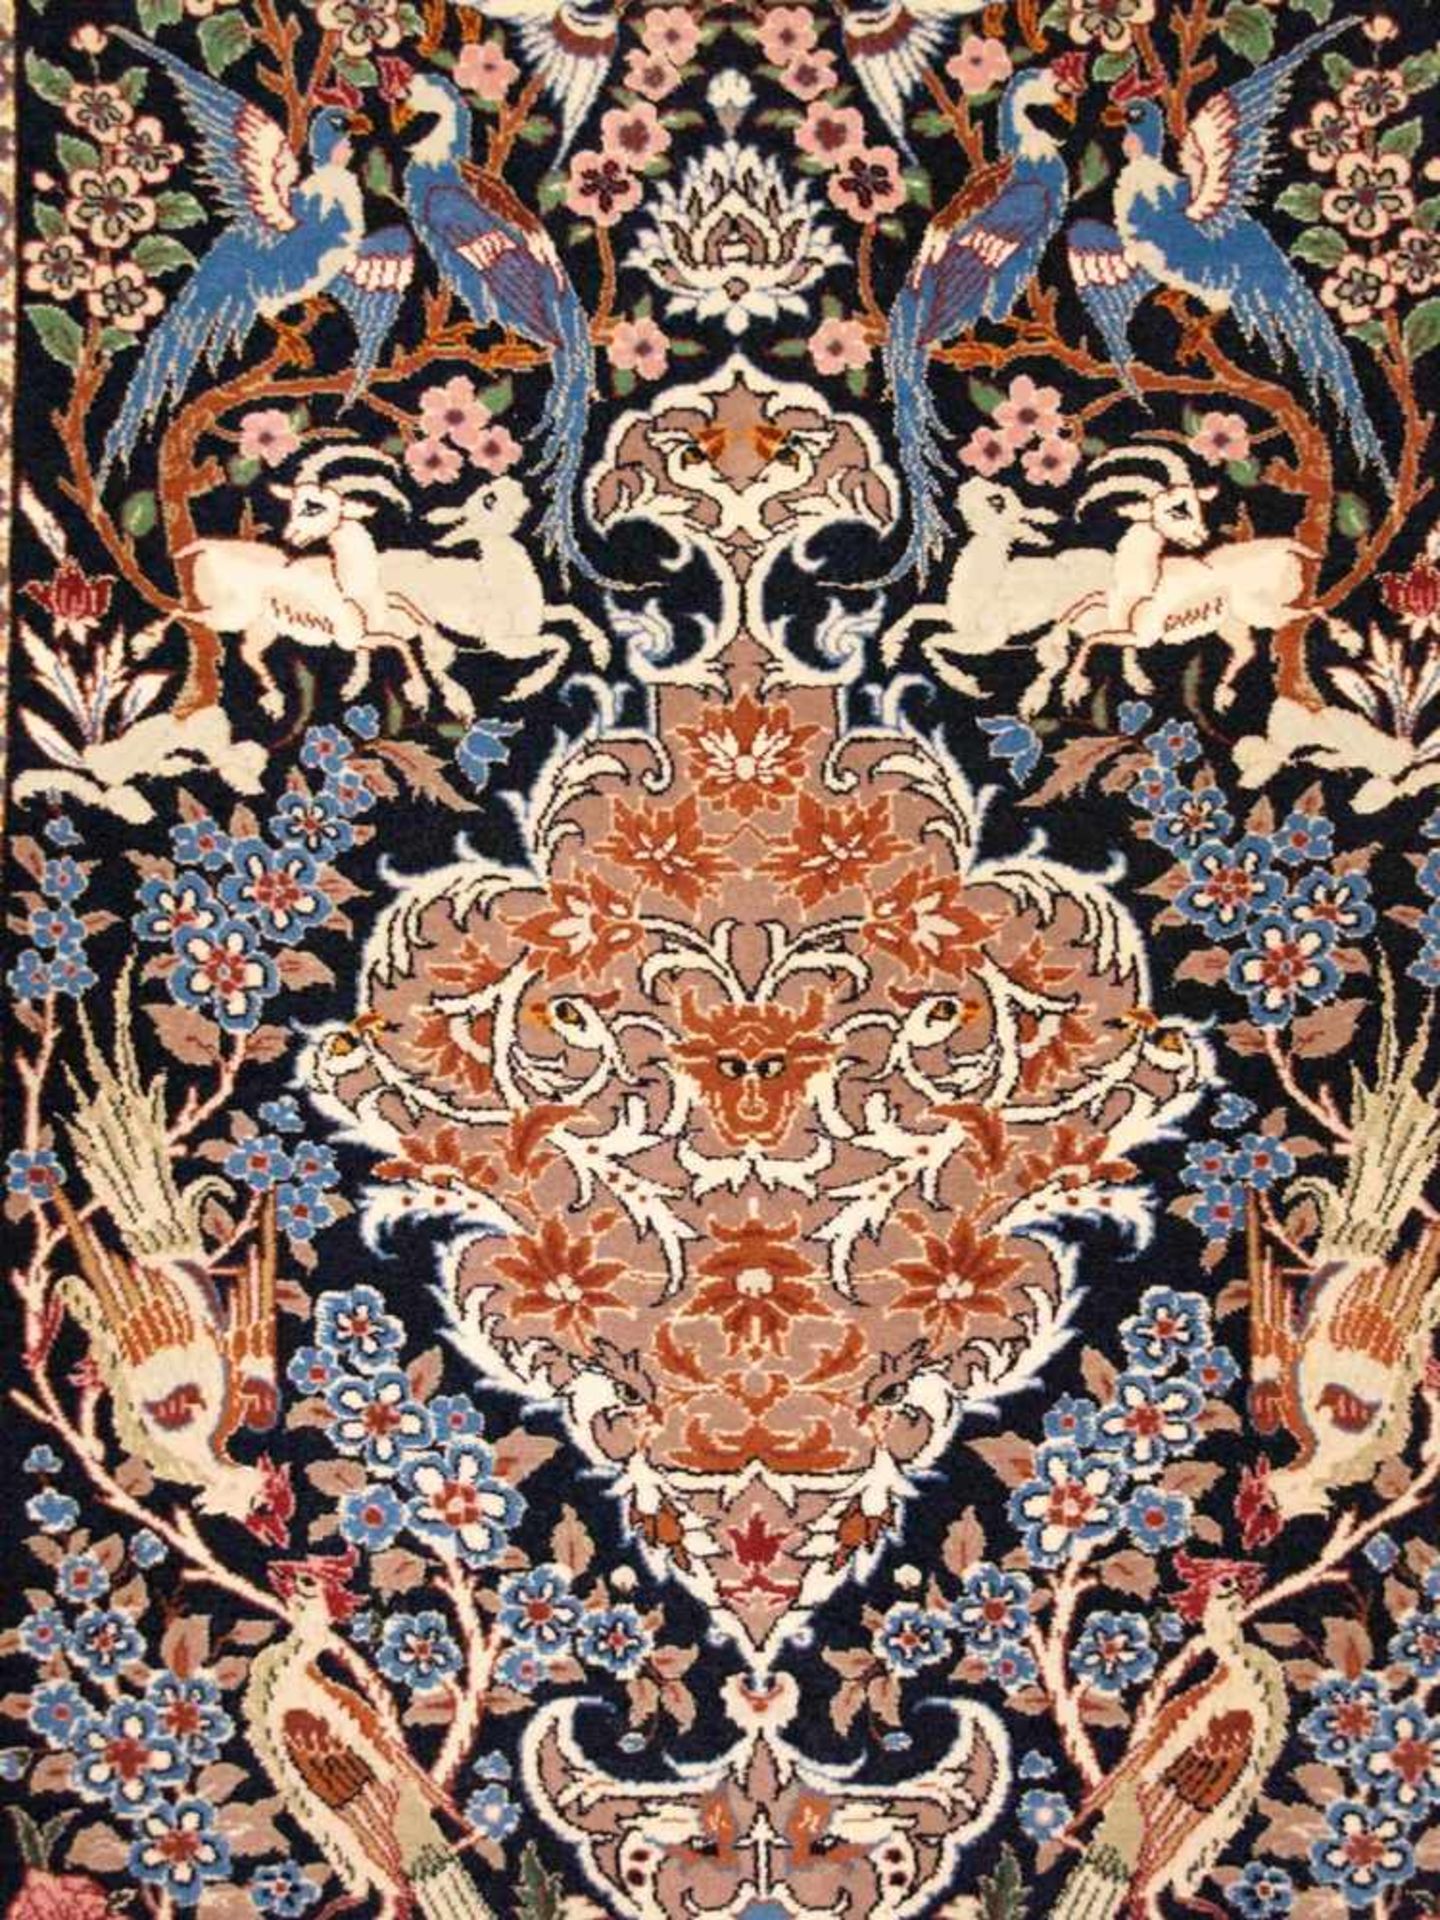 Orientteppich - Wolle und Seide, blaugrundig, zentrale florale Kartusche, gerahmt von Vögeln, - Bild 2 aus 11